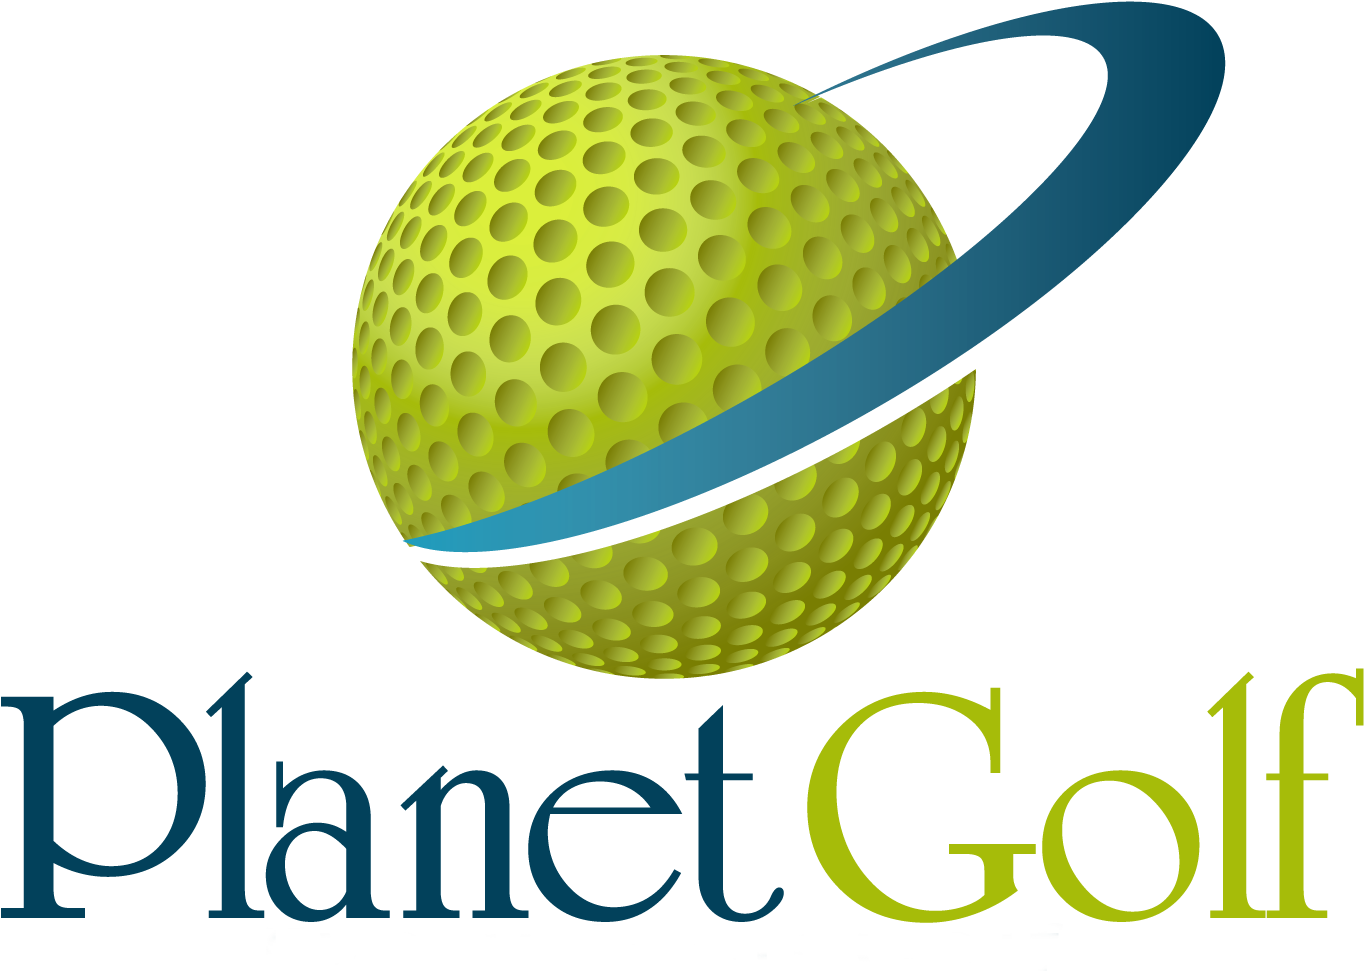 Golf Logos - Golf Ball Clip Art (1380x970)